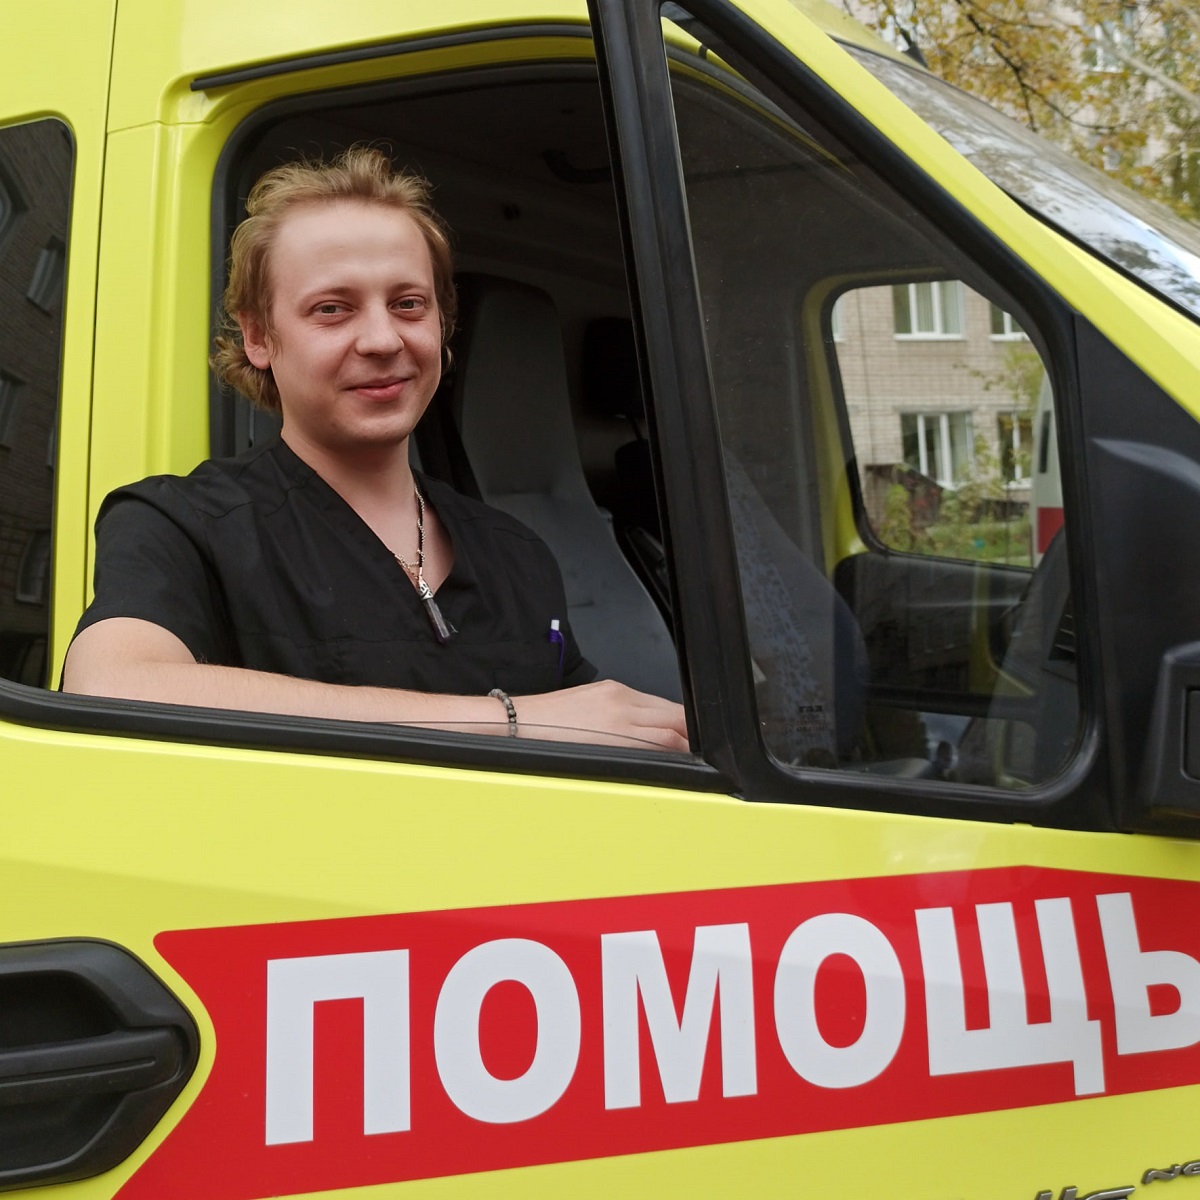 Дмитрий Пермикин работает в медицине 4 года